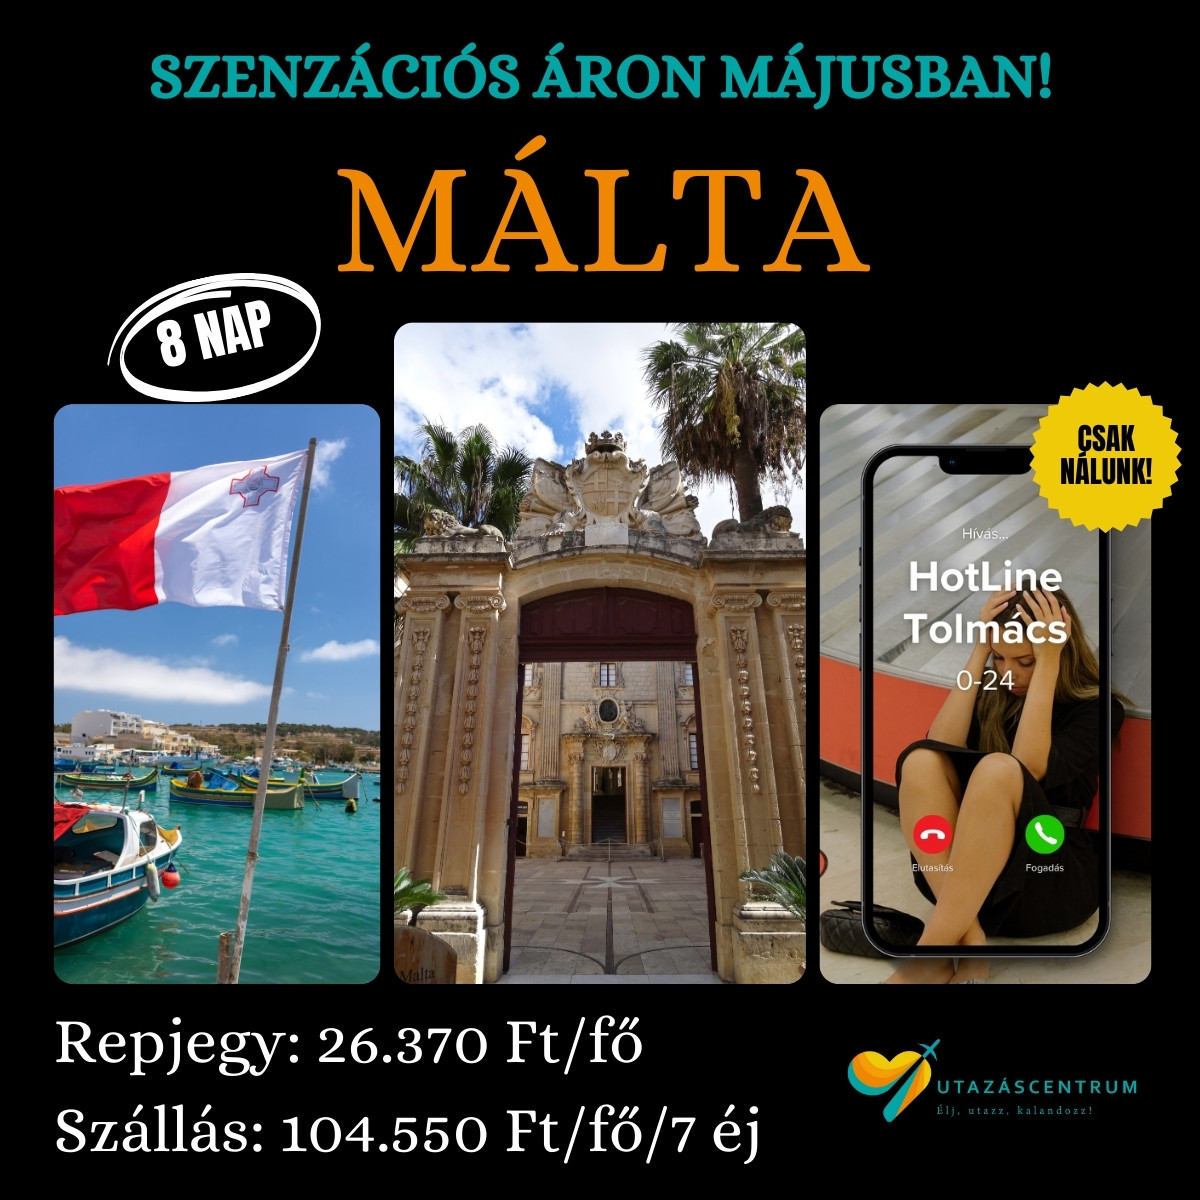 Málta utazás nyaralás utazási tipp programok látnivalók szállás repjegy utazáscentrum blog